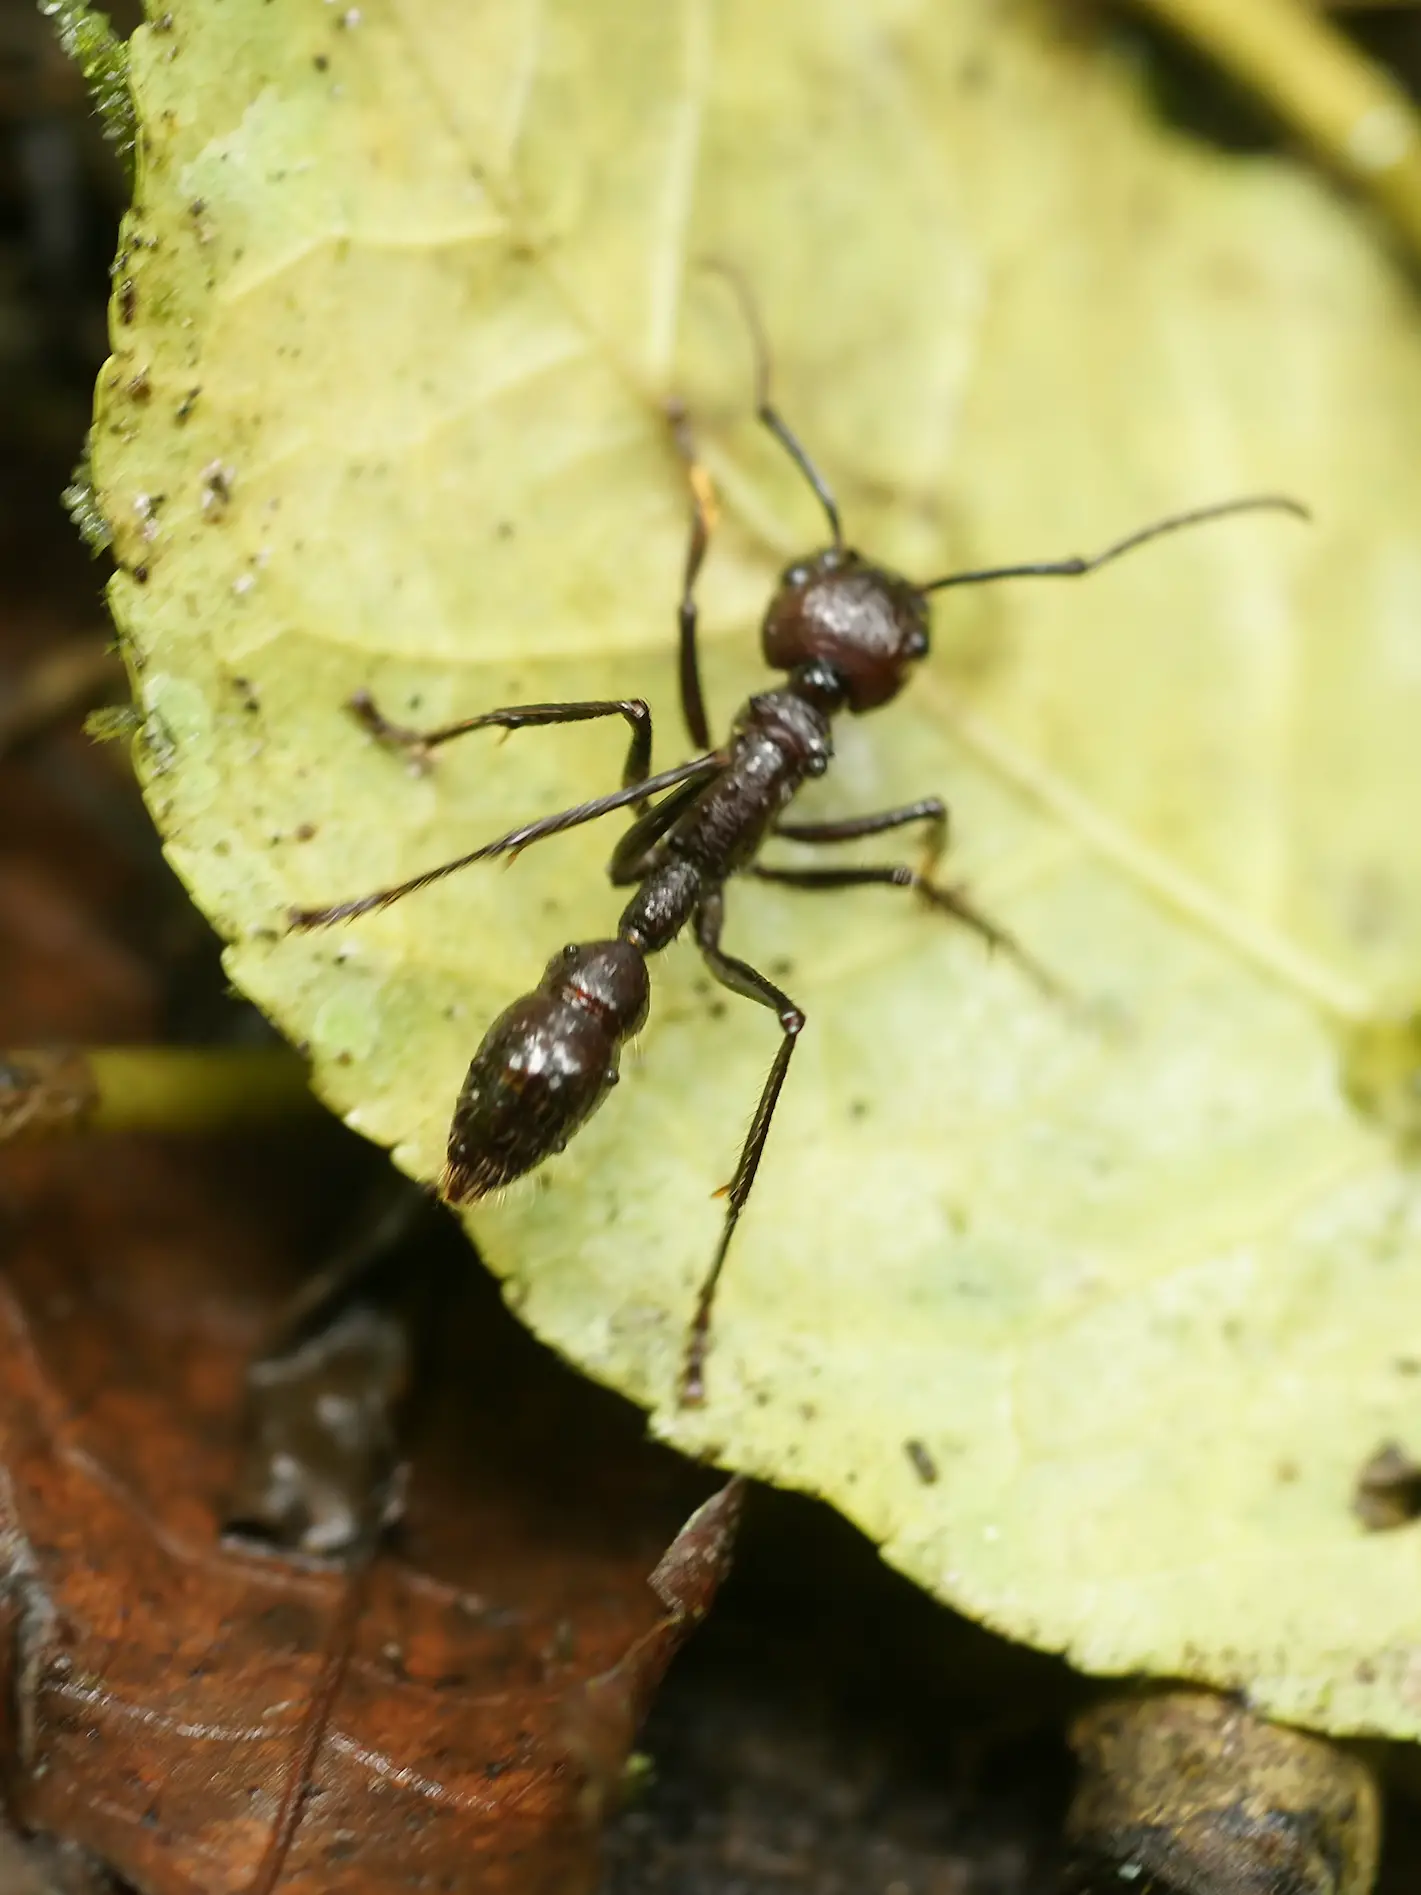 Hormiga bala: El insecto que tiene la picadura más fuerte del mundo -Revista Interesante